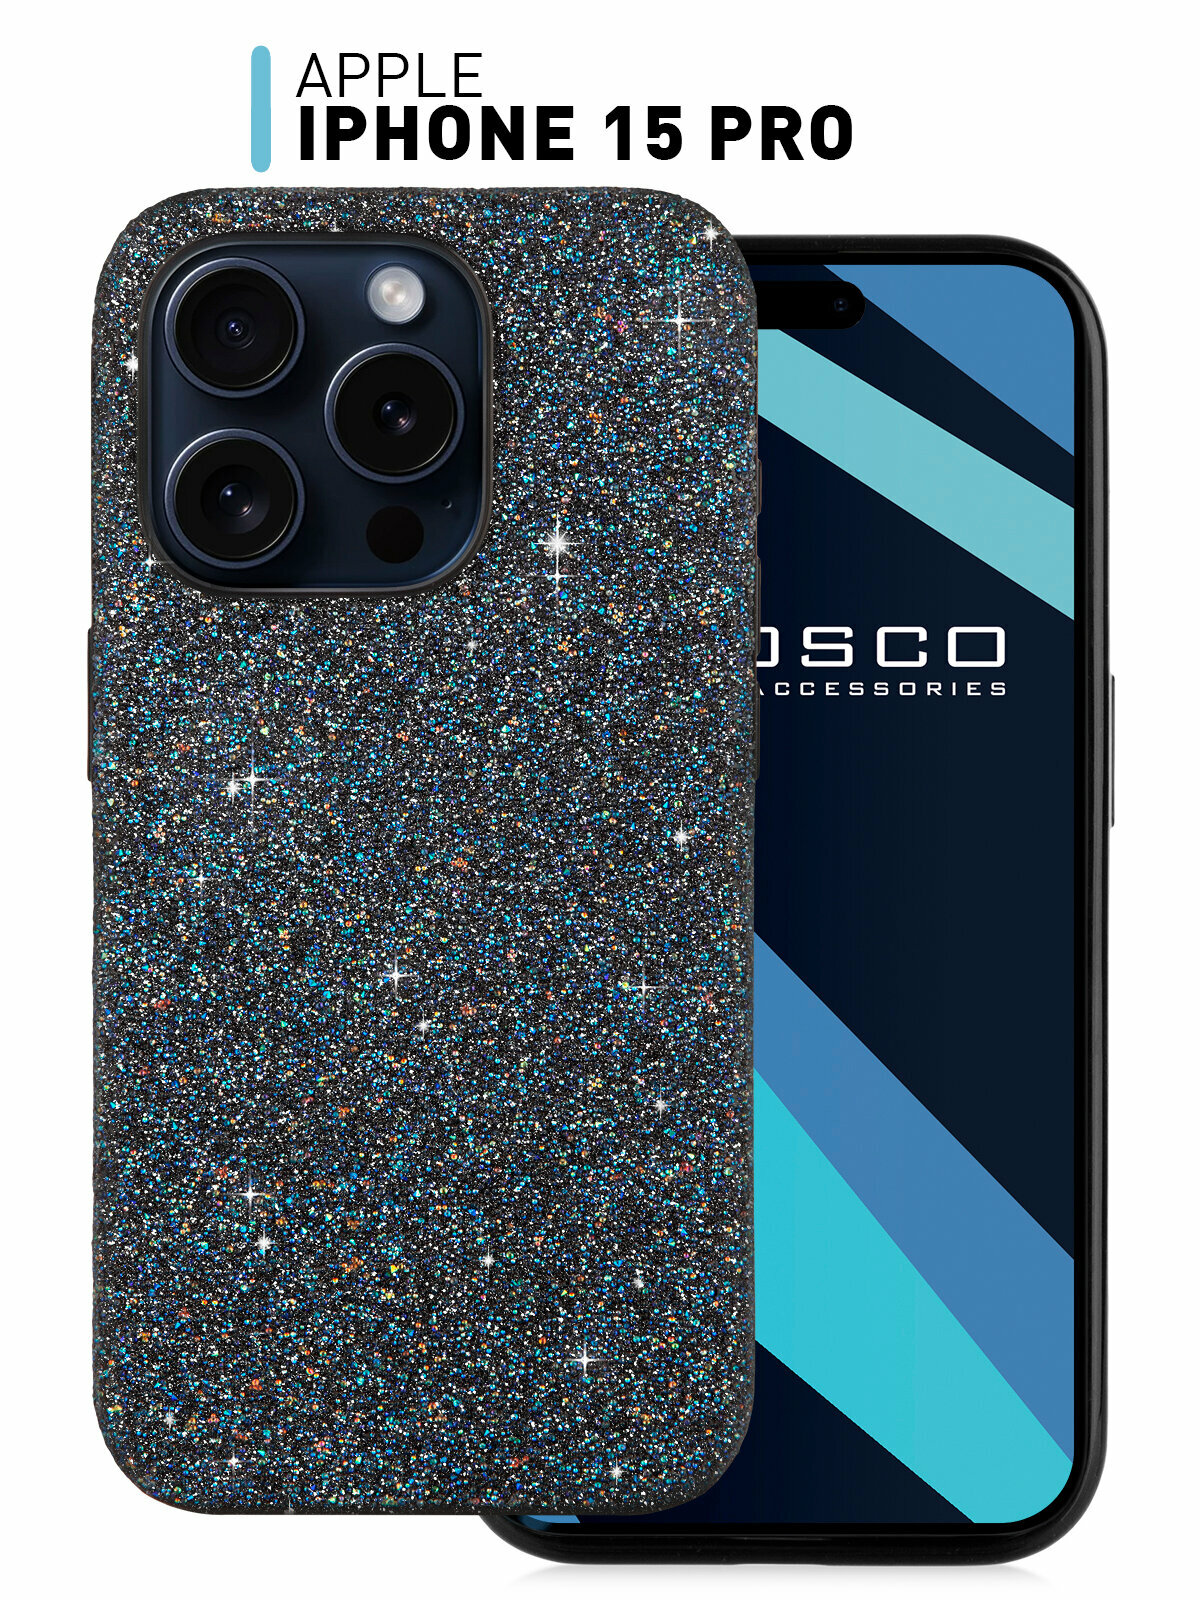 Чехол для Apple iPhone 15 Pro (Эпл Айфон) со стразами, бортик вокруг камер и блестящими кристаллами, люксовый синий чехол ROSCO с блестками